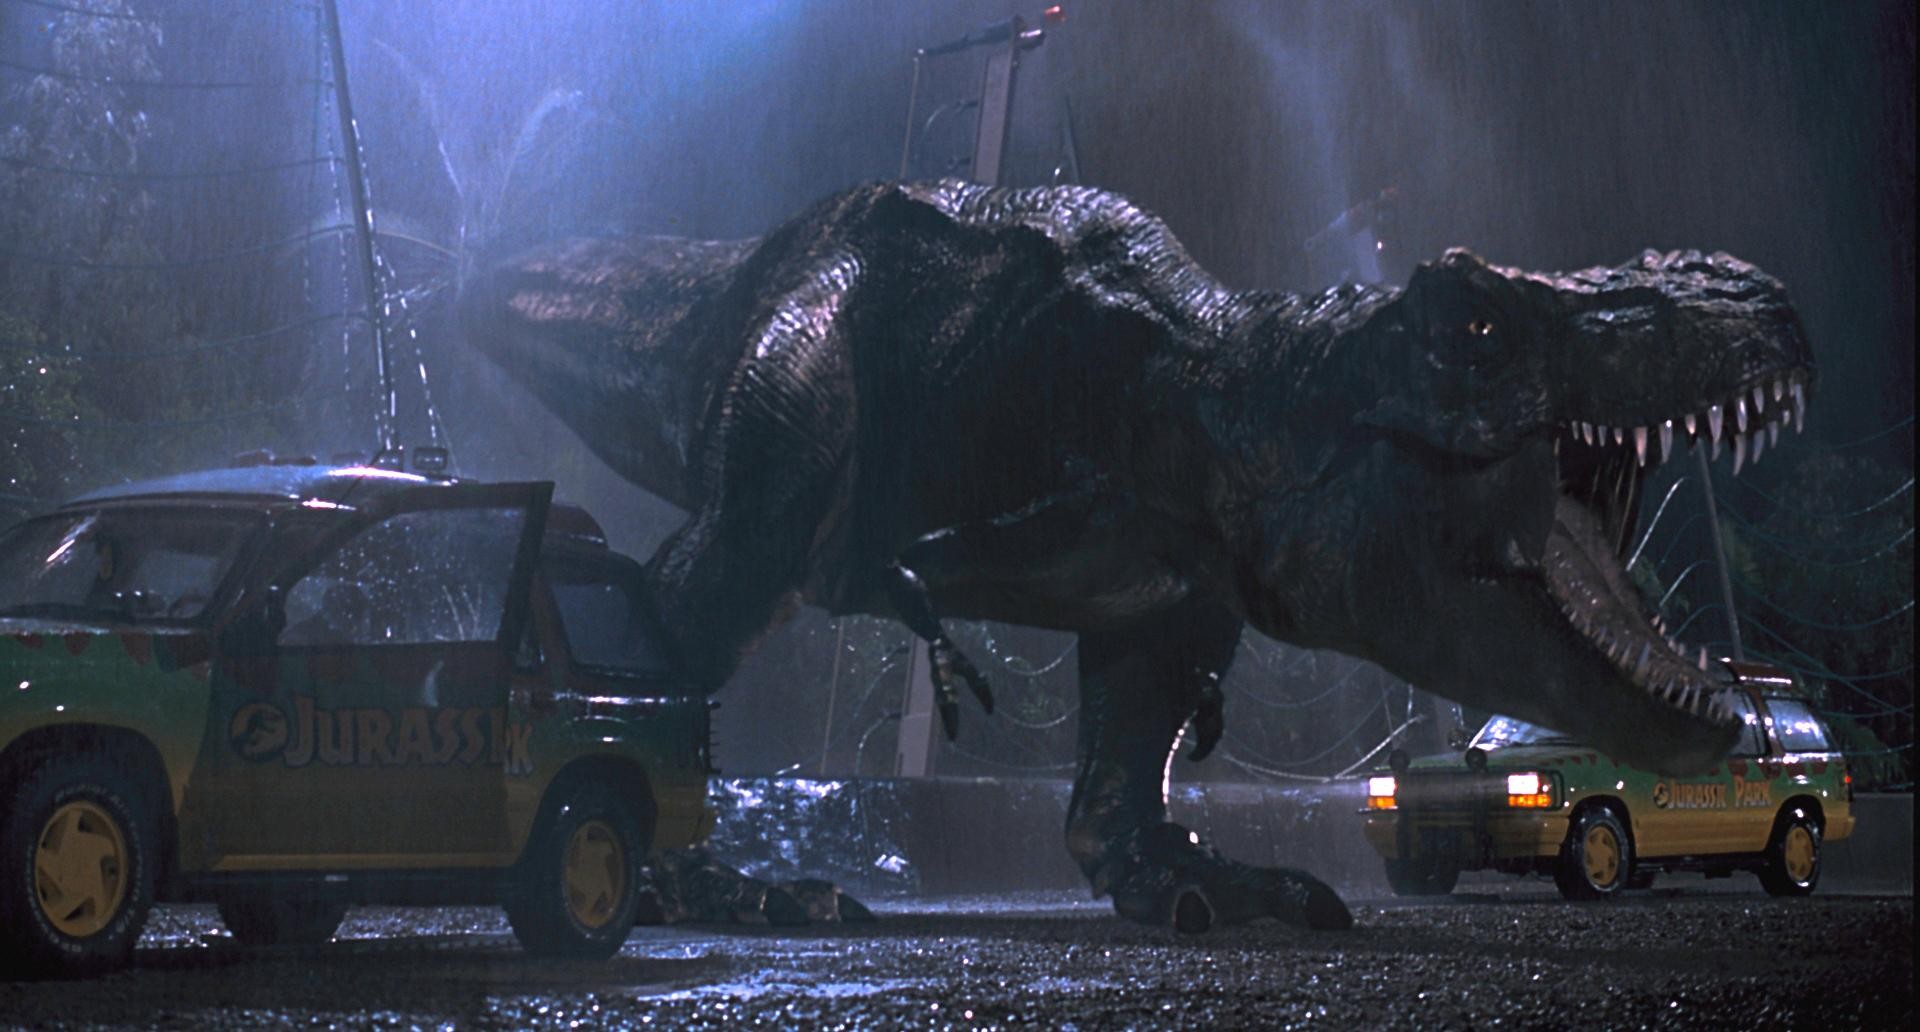 Jurassic Park: a franquia que vive até hoje foi iniciada pelo diretor Steven Spielberg (Foto: Divulgação)